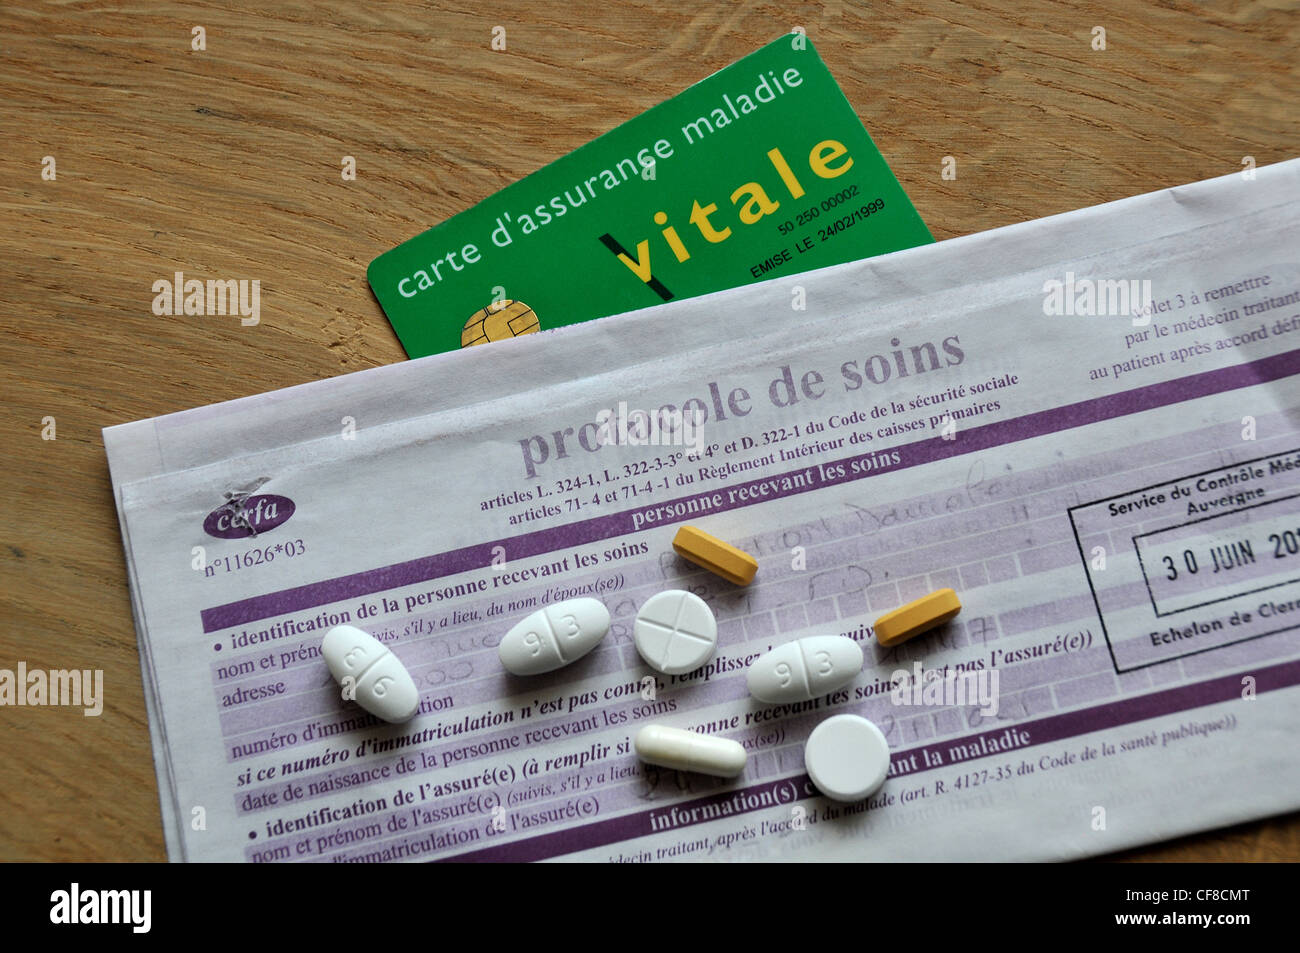 Vitale foglio di carta protocollo di trattamento della sicurezza sociale francese forma Foto Stock